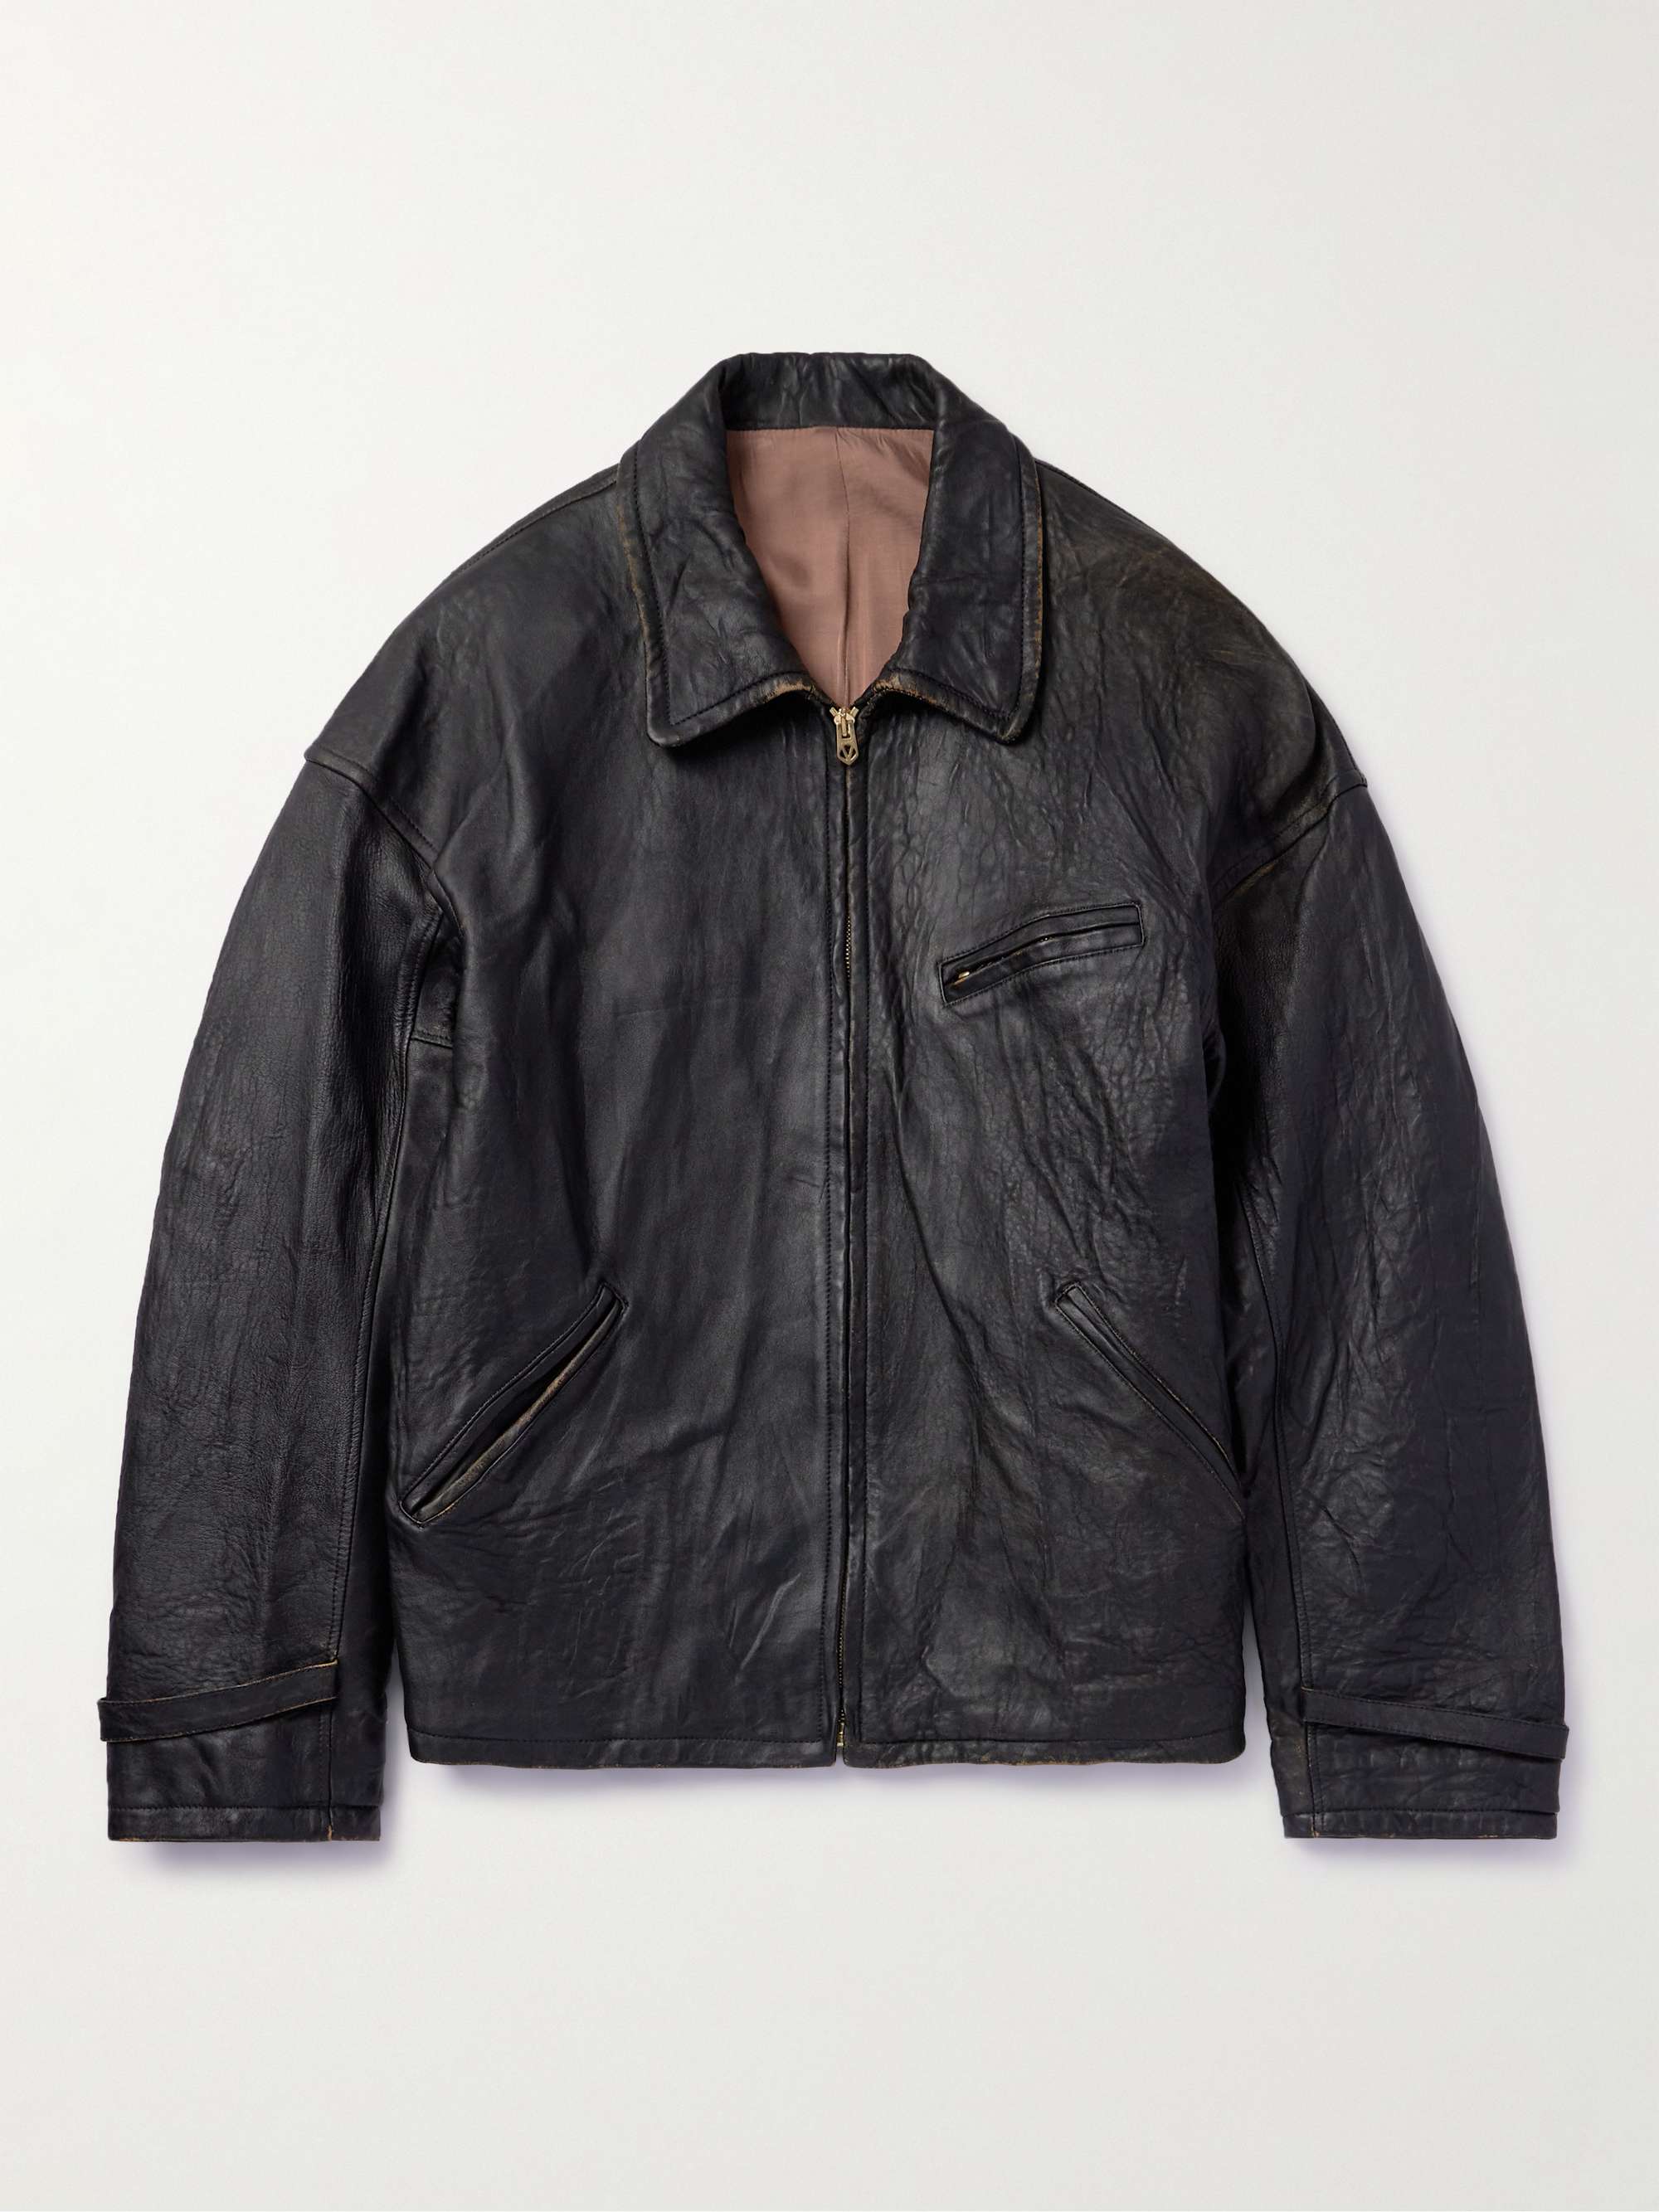 VISVIM Distressed Leather Jacket for Men | MR PORTER